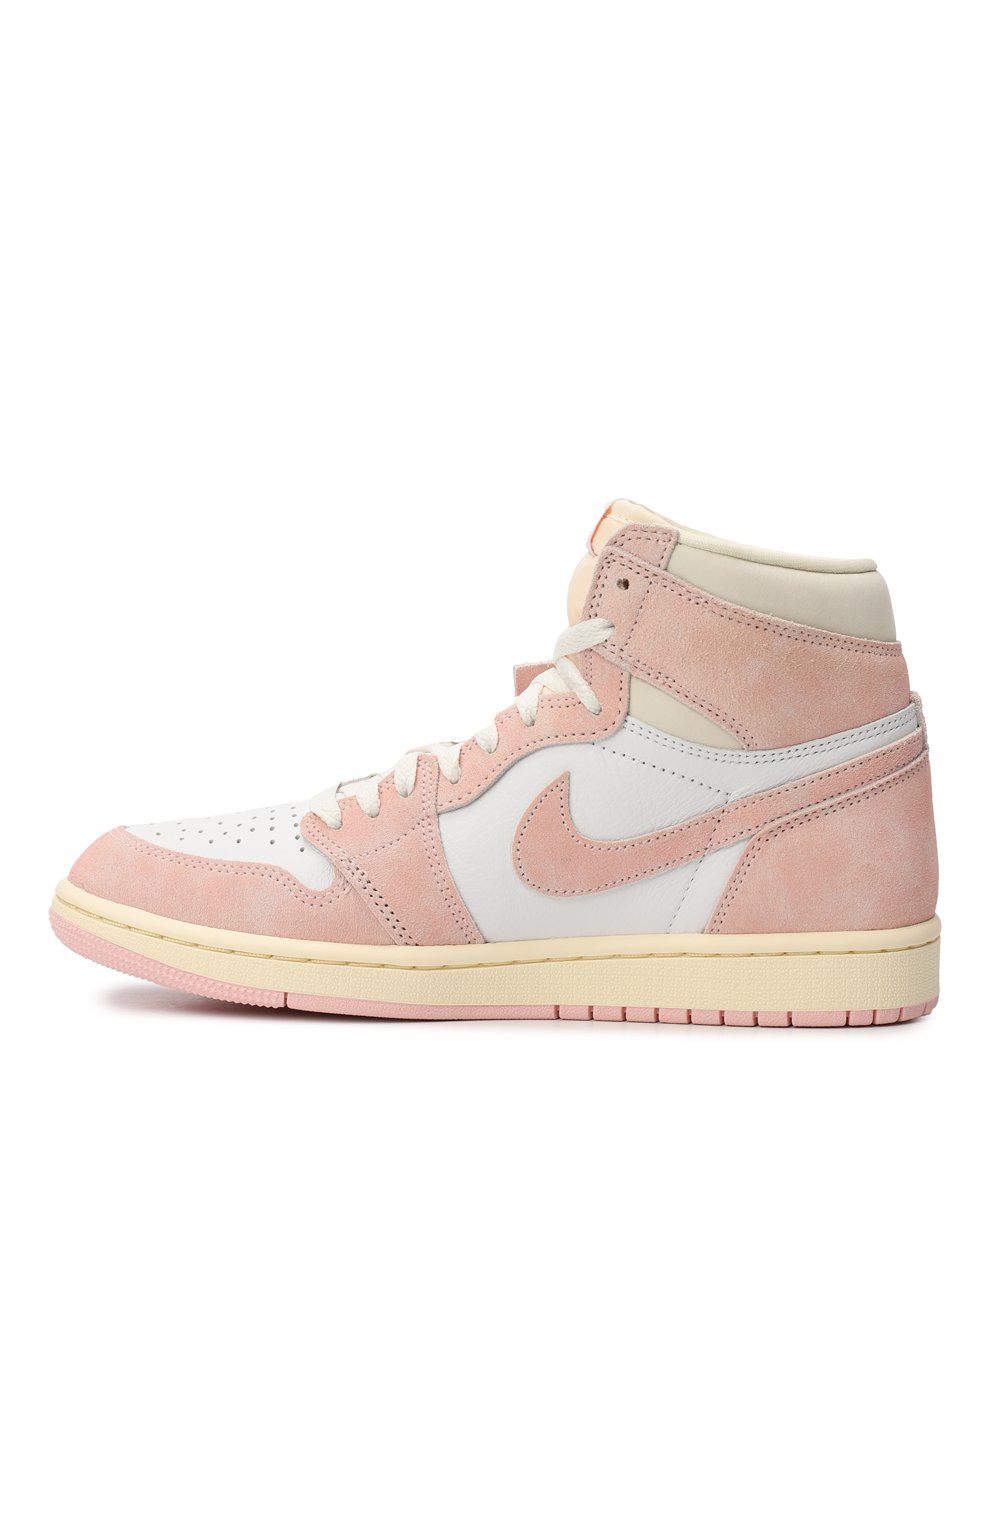 Кеды Air Jordan 1 Retro High OG Washed Pink | Nike | Розовый - 4